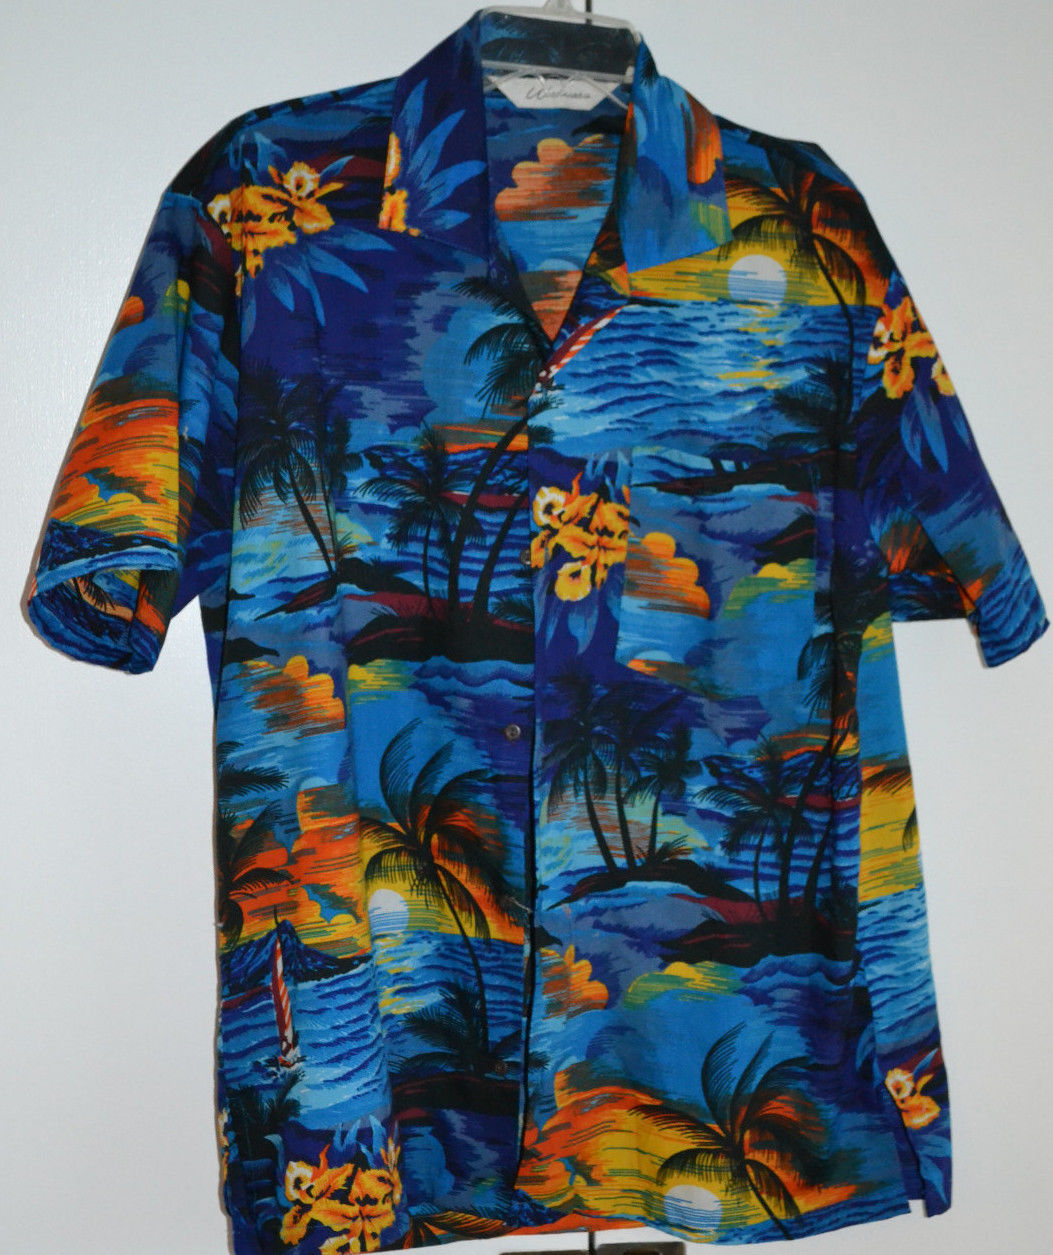 Men’s XL Hawaiian Shirt by Uluwatu 100% Polyester - Casual Shirts